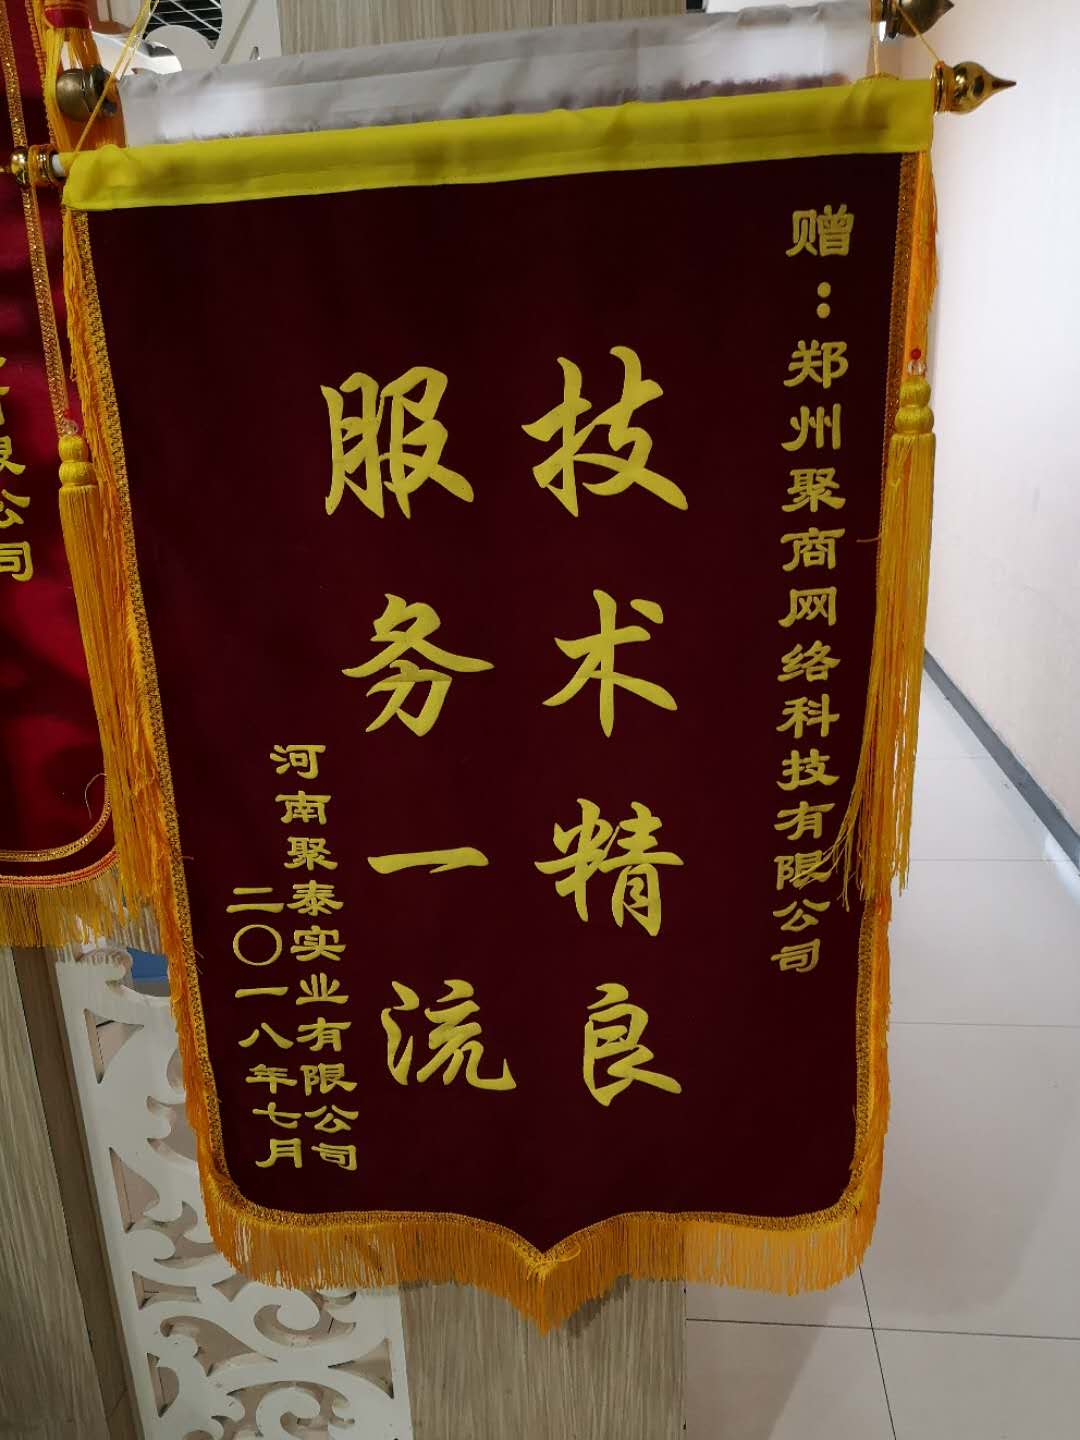 河南聚泰实业有限公司郑州分公司赠送的锦旗